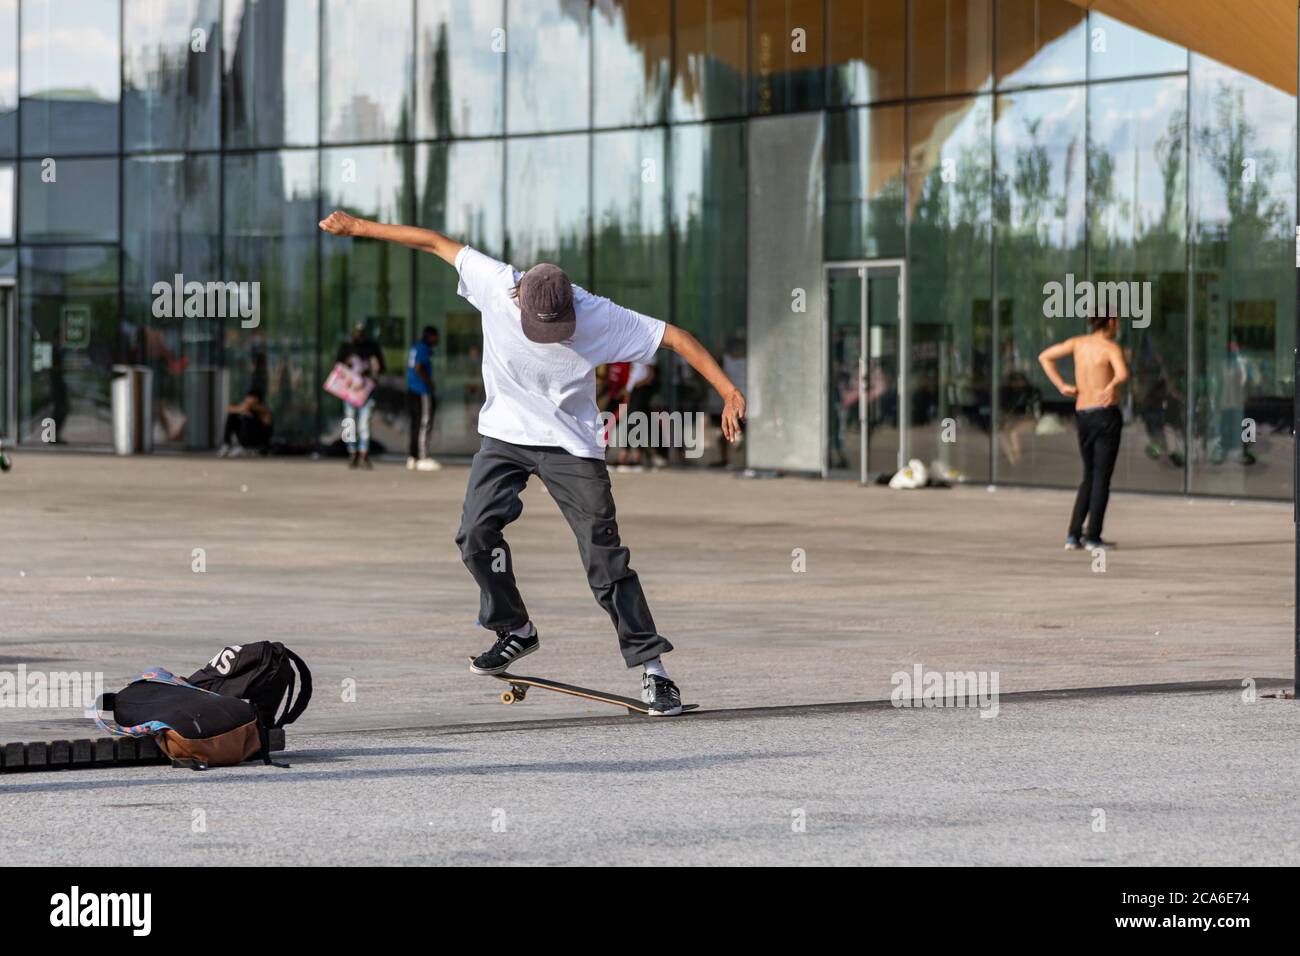 Un jeune homme ou un adolescent au milieu d'un tour de skateboard devant la Central Library Oodi à Helsinki, en Finlande Banque D'Images